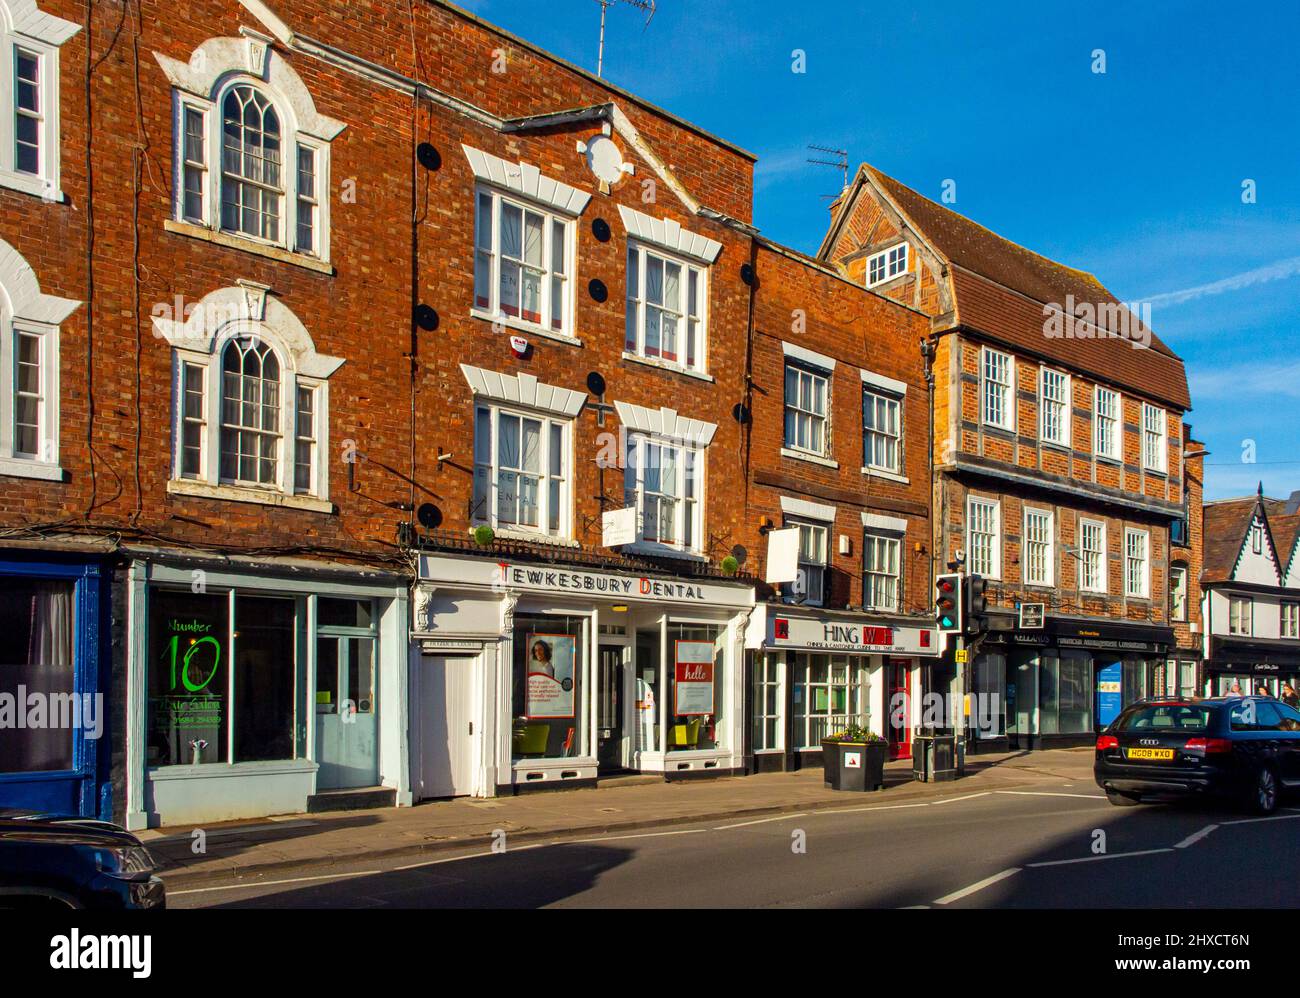 Edificios y tiendas tradicionales en el centro de Tewkesbury, una ciudad de Gloucestershire, Inglaterra, Reino Unido. Foto de stock